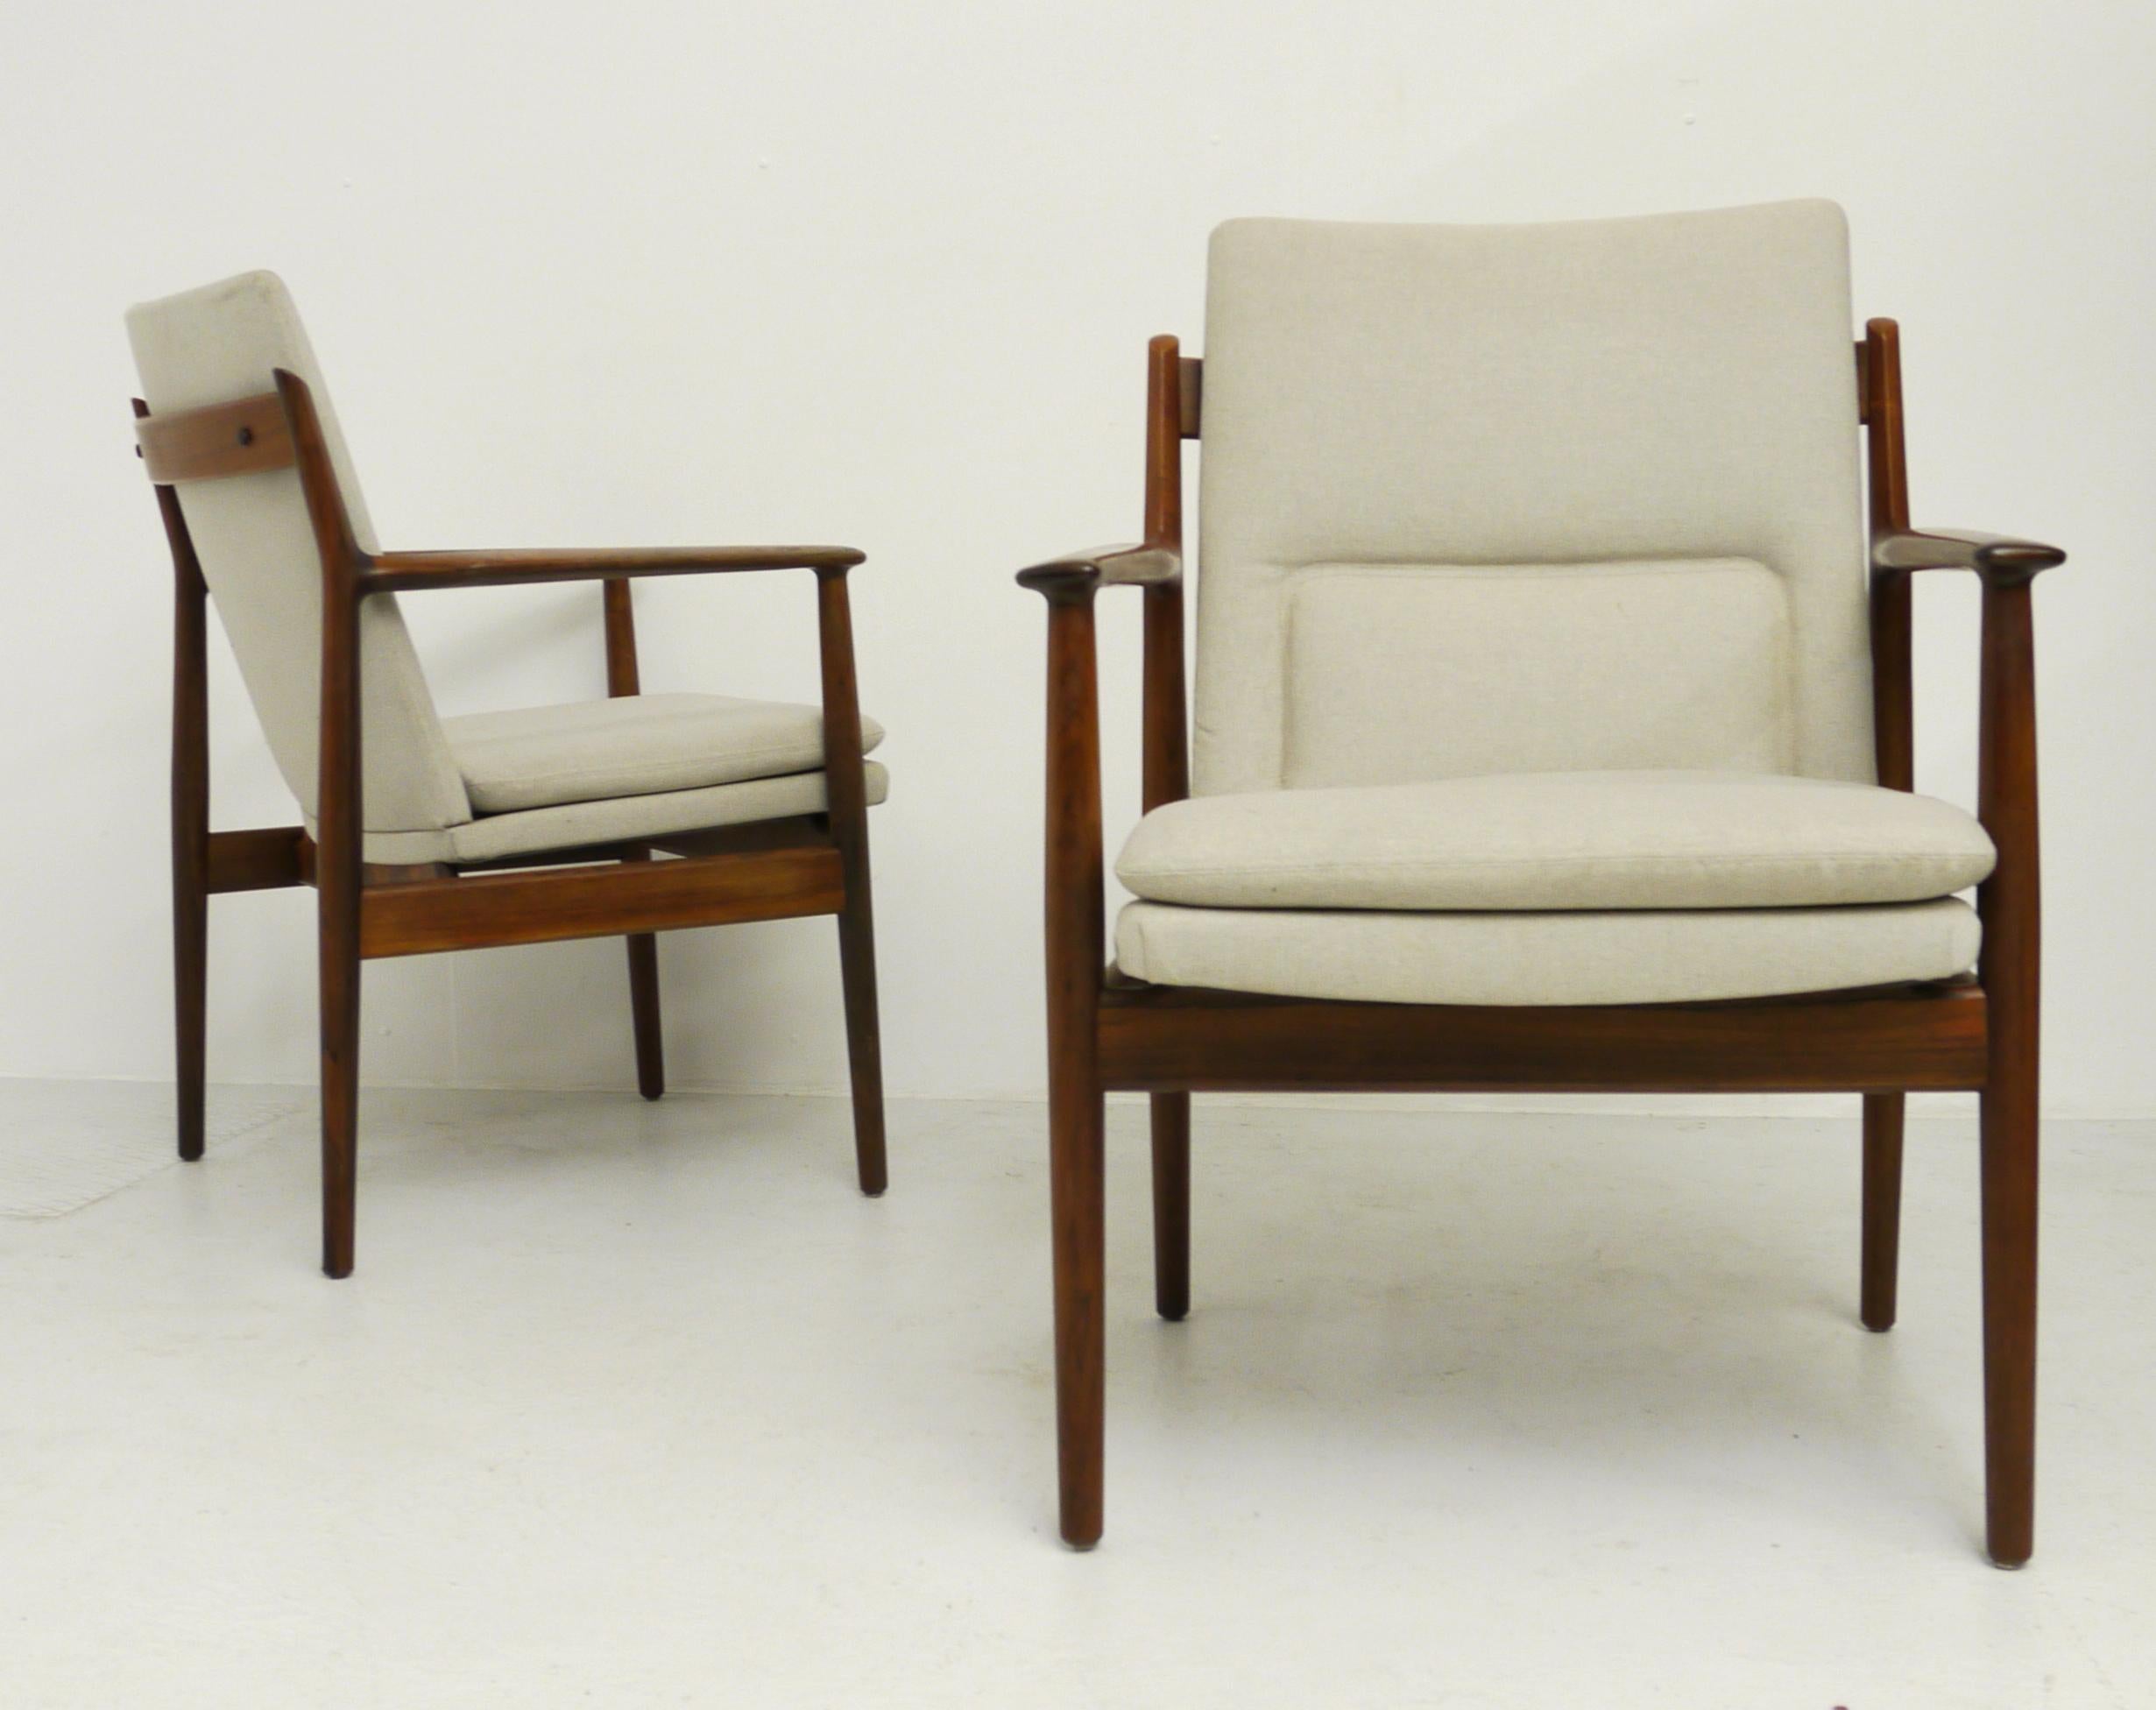 Eine seltene Sesselgruppe, Modell 431, entworfen von Arne Vodder. Hergestellt in Dänemark in den 1960er Jahren, produziert von Sibast Mobler. Er hat einen massiven Holzrahmen aus Palisander und eine Polsterung in Beige. In sehr gutem